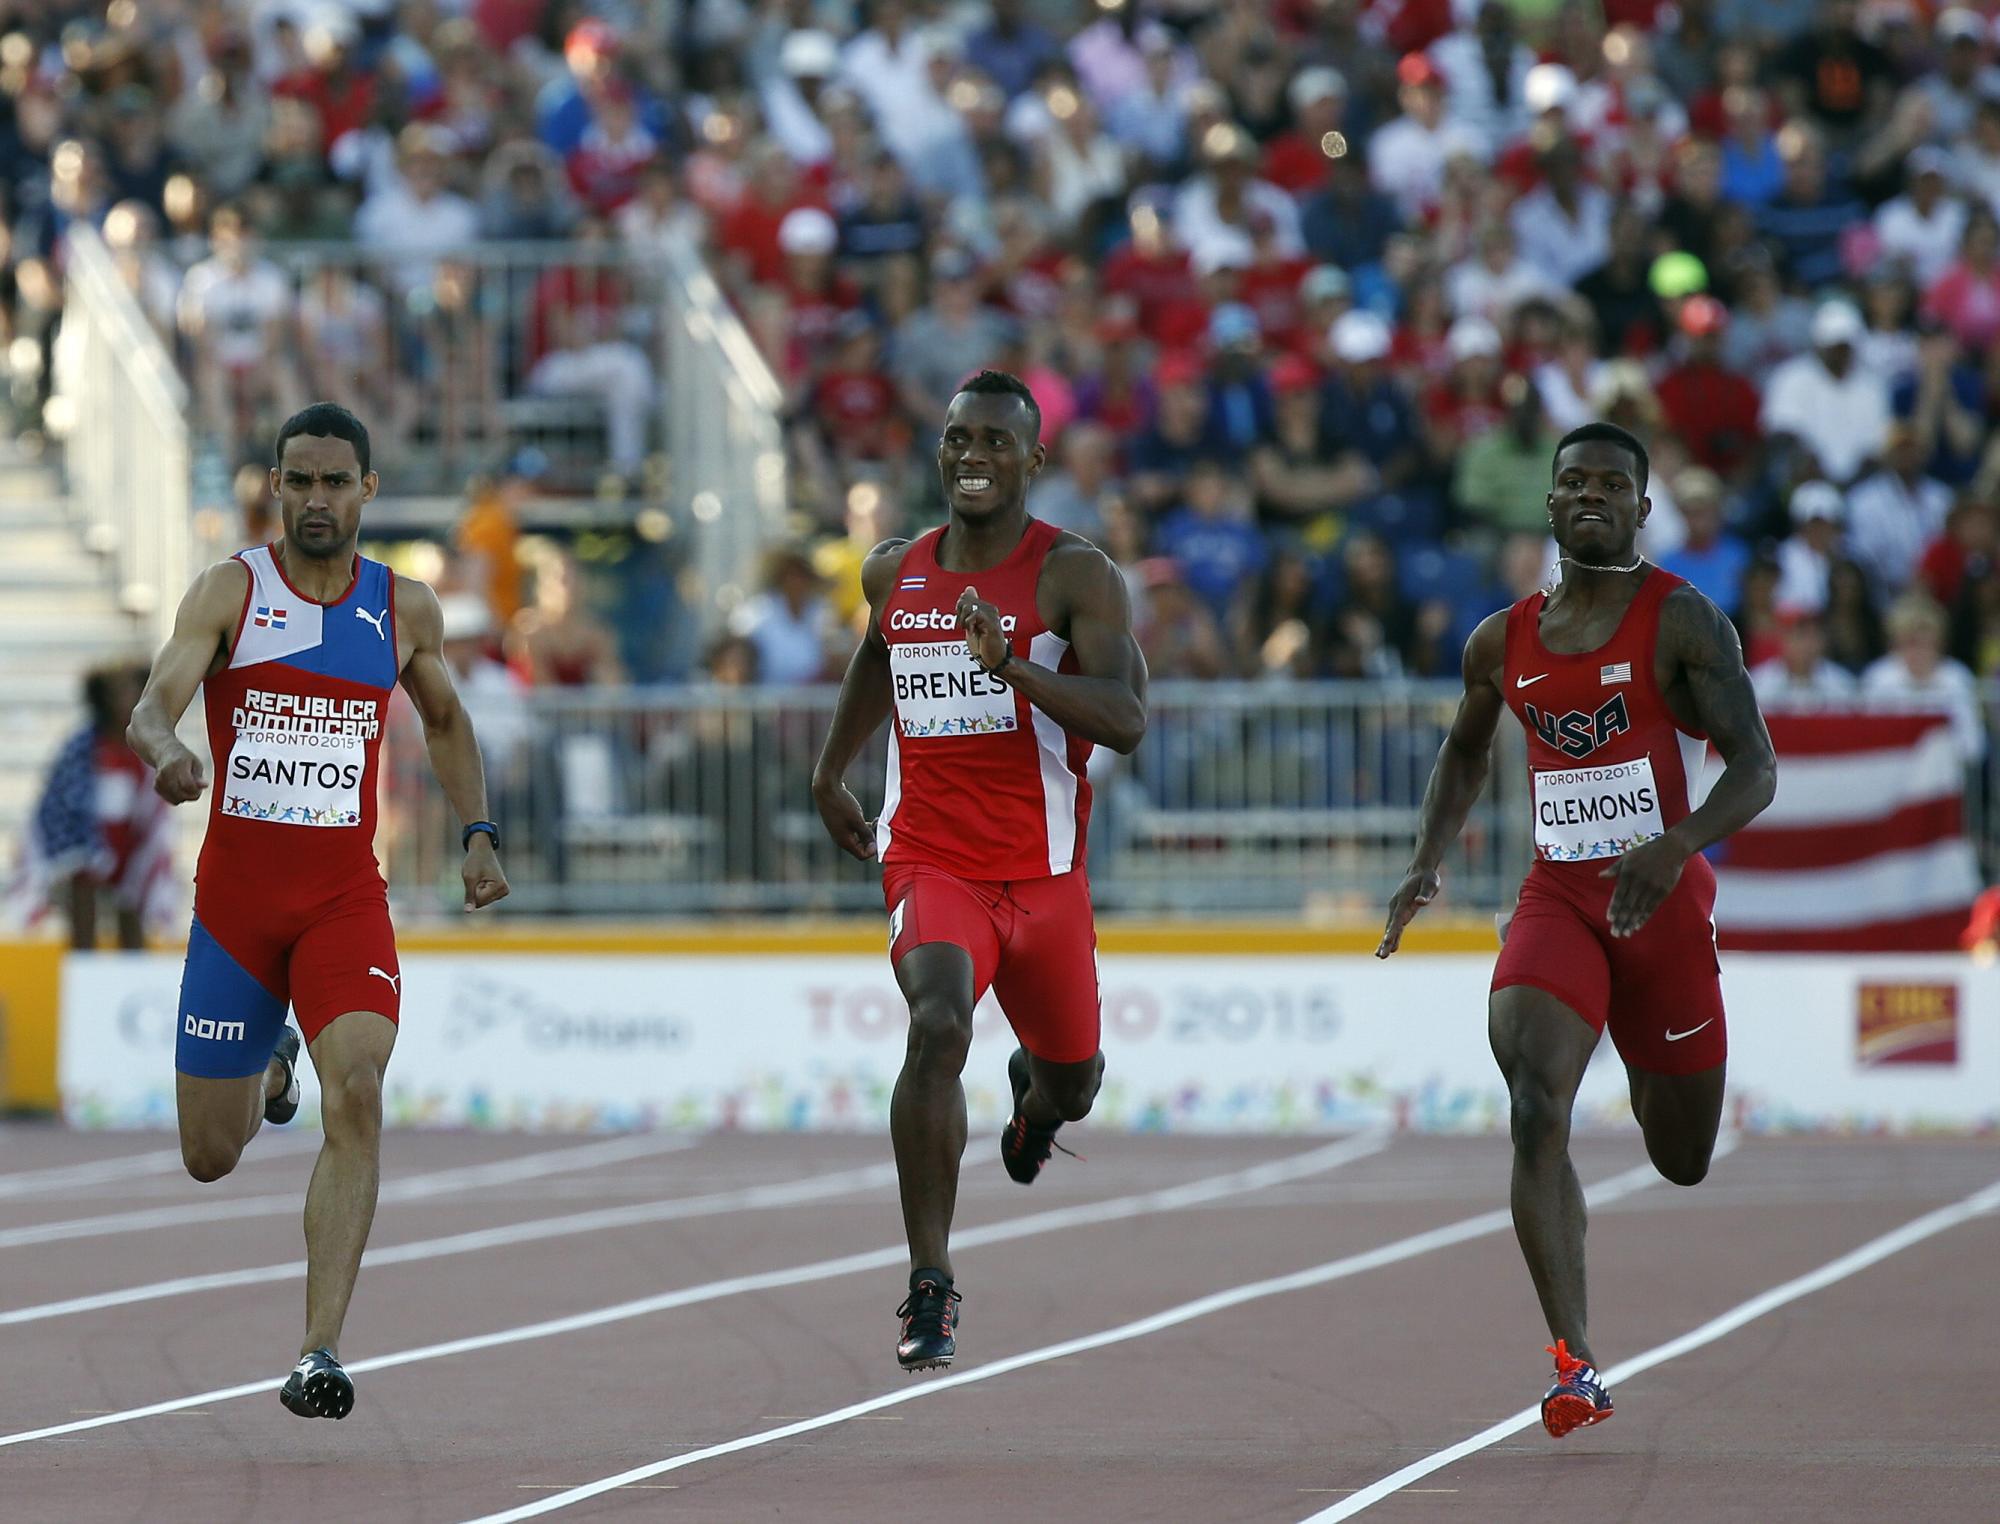 Izquierda a derecha los atletas Luguelín Santos, de República Dominicana; Nery Brenes, de Costa Rica y Kyle Clemons de Estados Unidos, compiten en la carrera de atletismo 400 metros hoy, jueves 23 de julio, en los Juegos Panamericanos 2015, que se celebran en Toronto (Canadá).